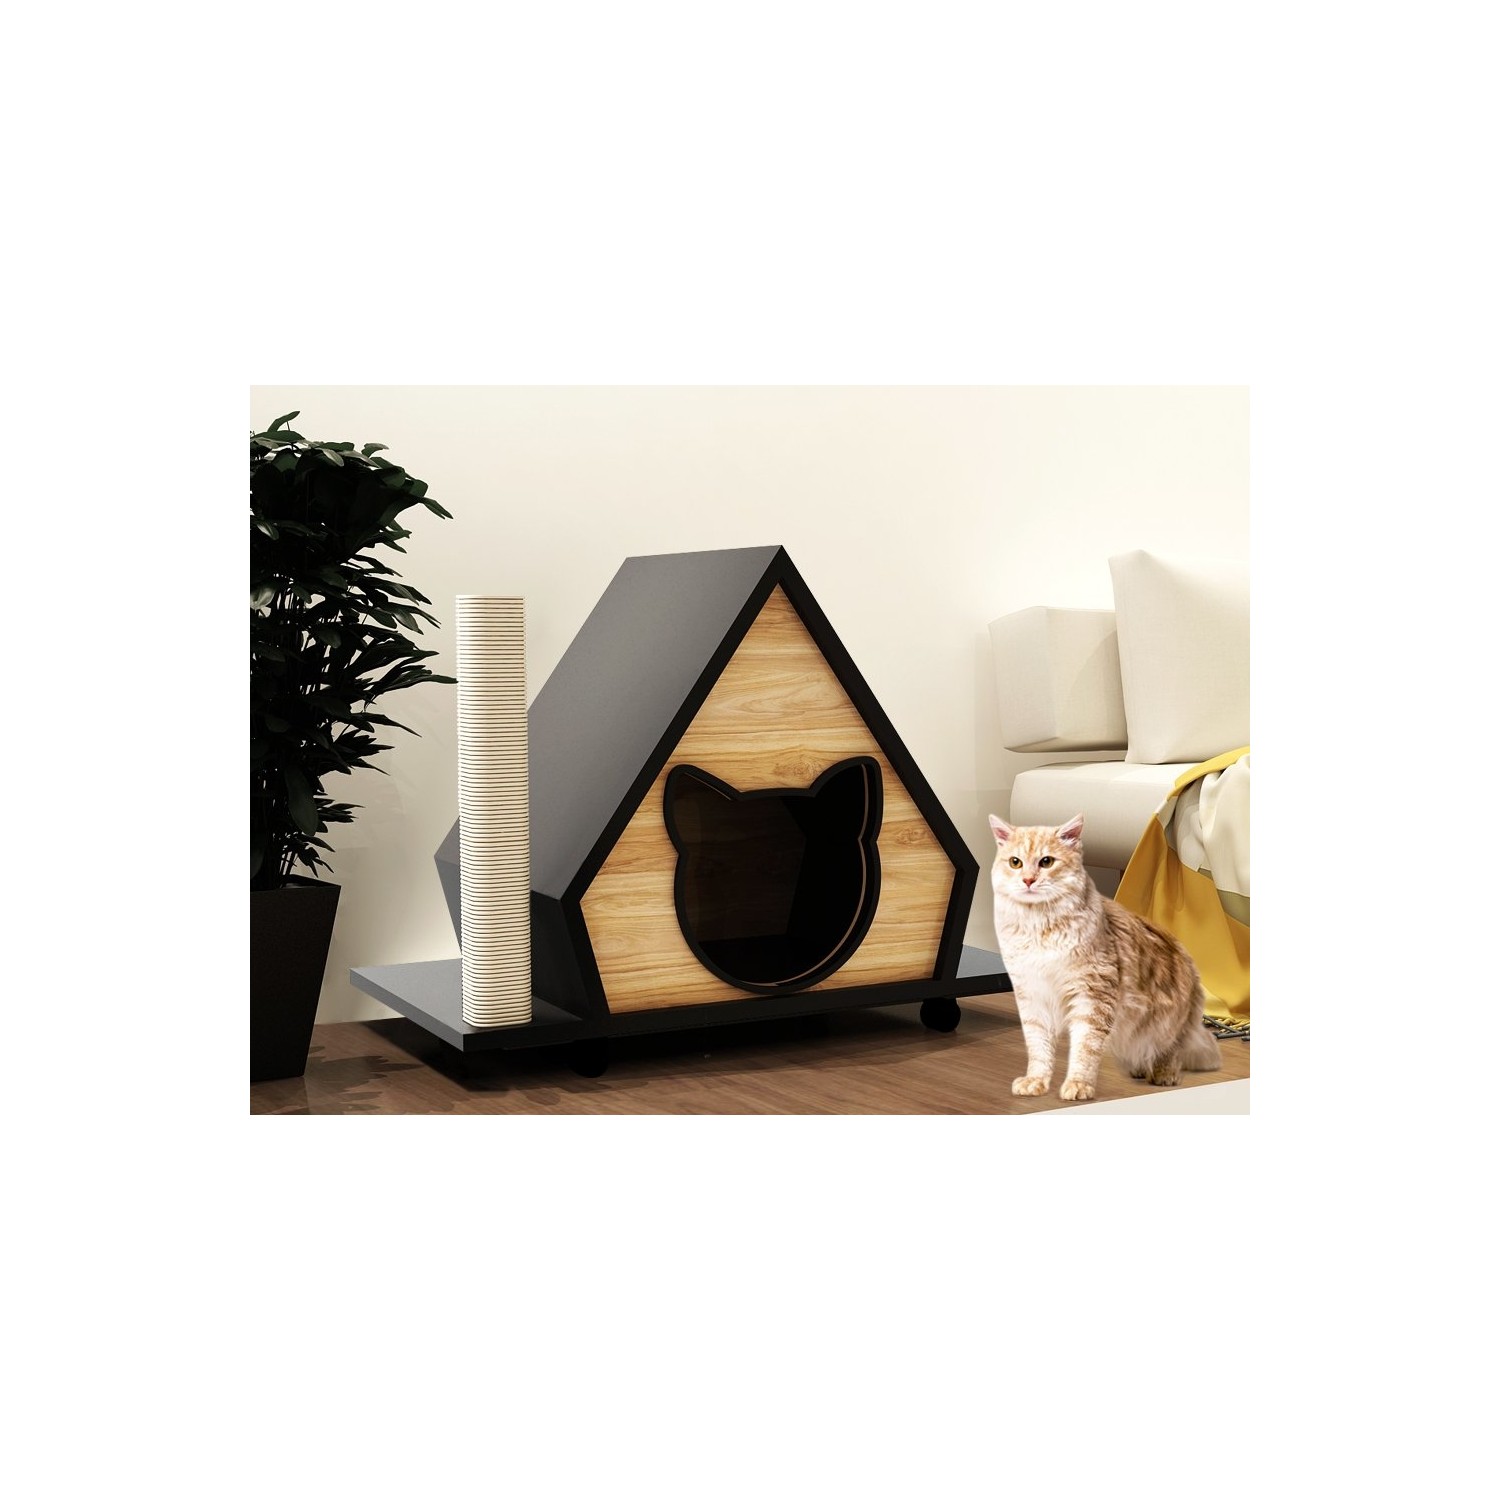 Odun Concept Tırmalama Halatlı Kedi Evi Modello Ahşap Fiyatı